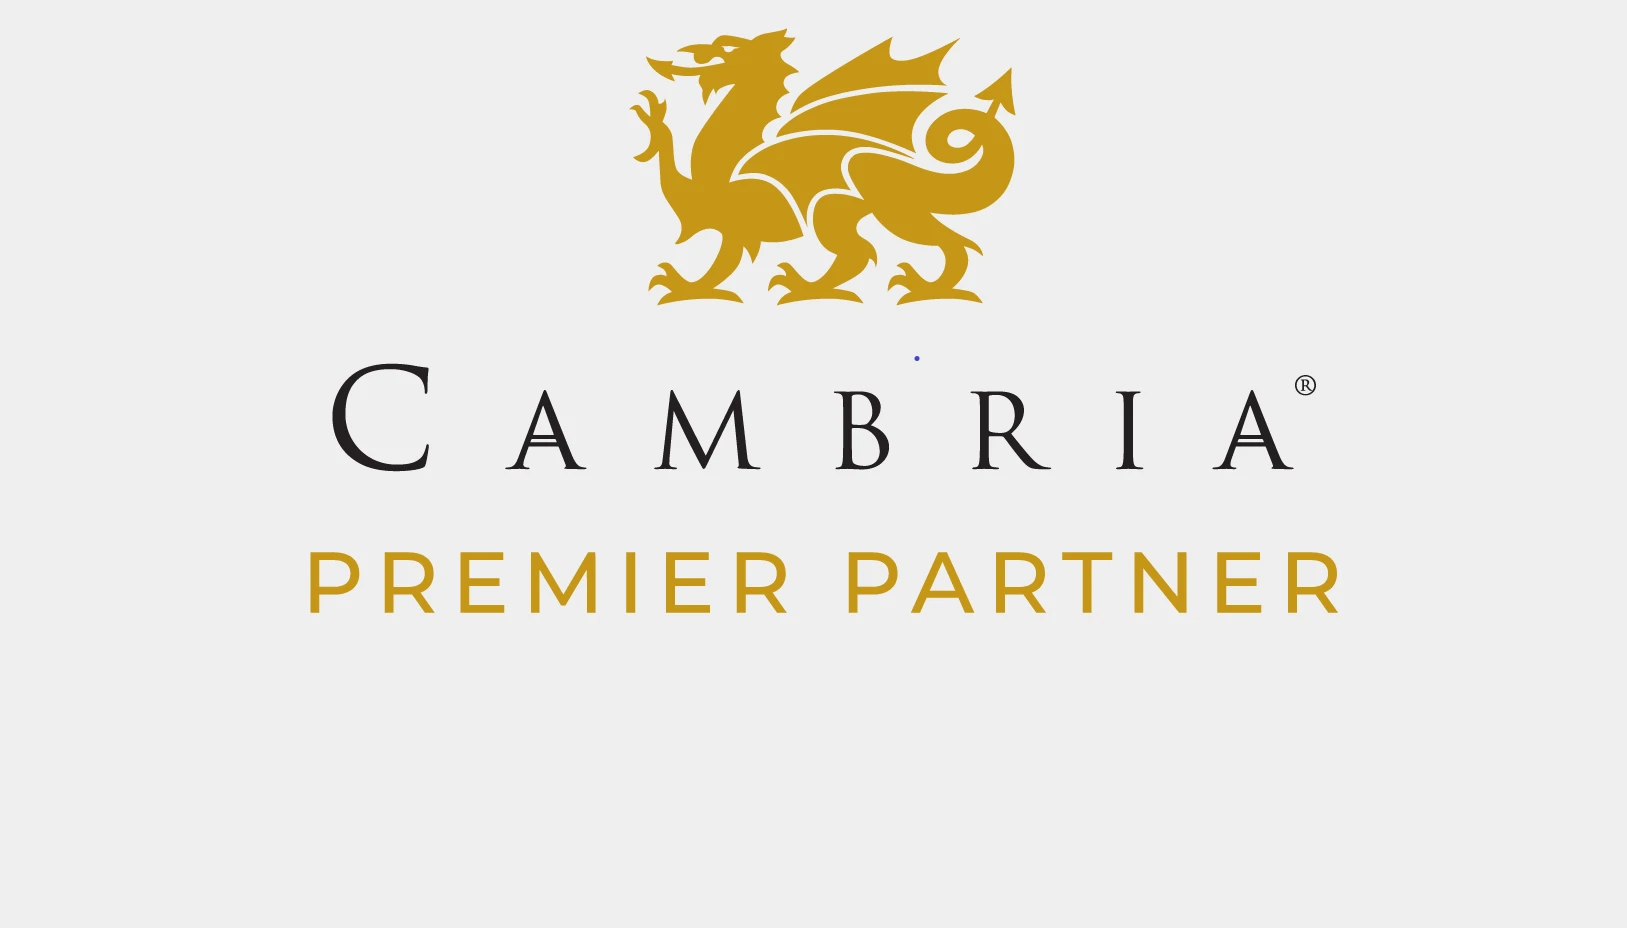 Premier Partner logo